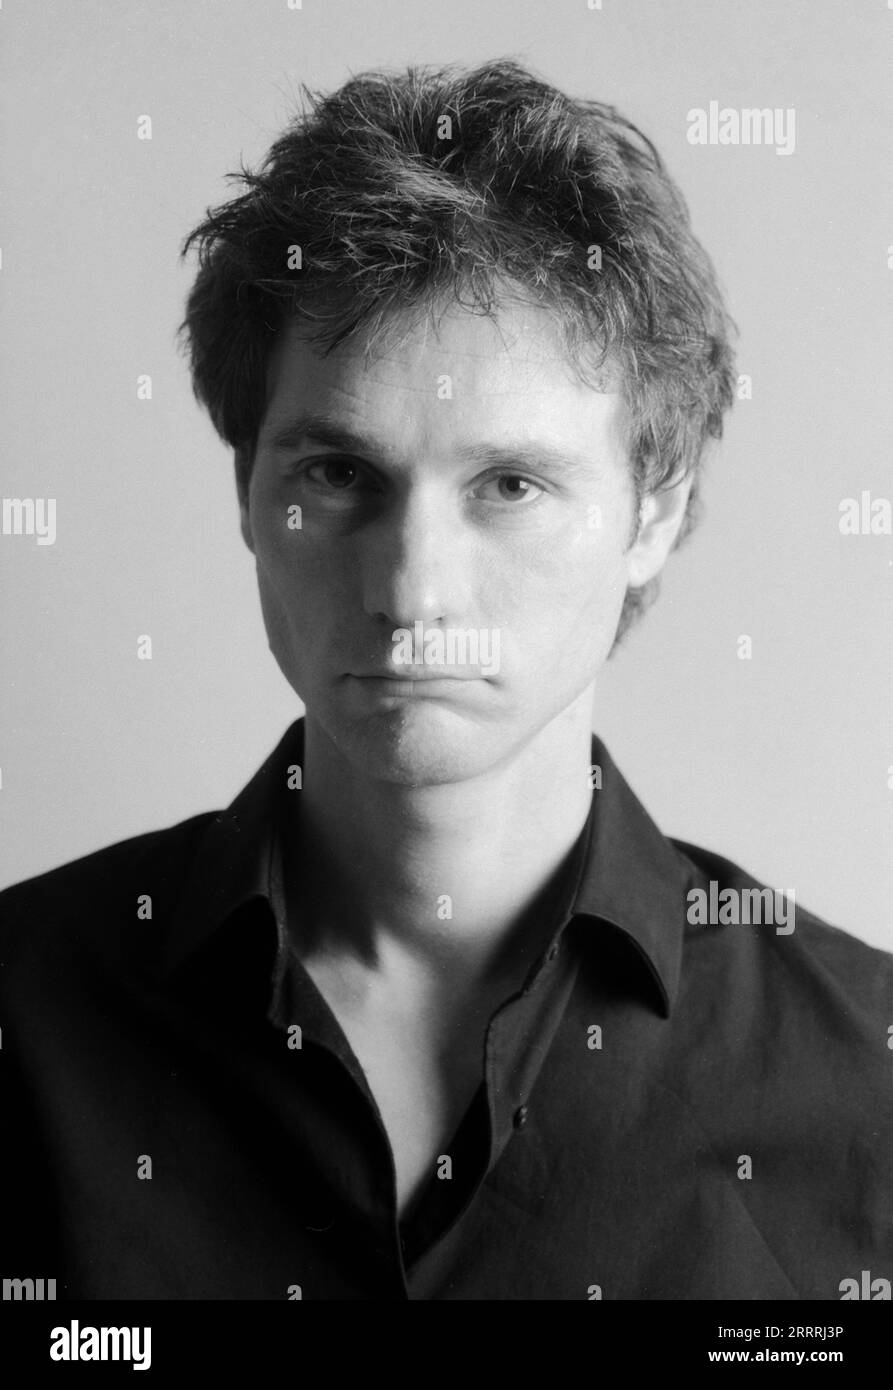 Alexander Reed, deutscher Schauspieler, bei einem Fotoshooting im Studio, Deutschland um 2003. Stockfoto